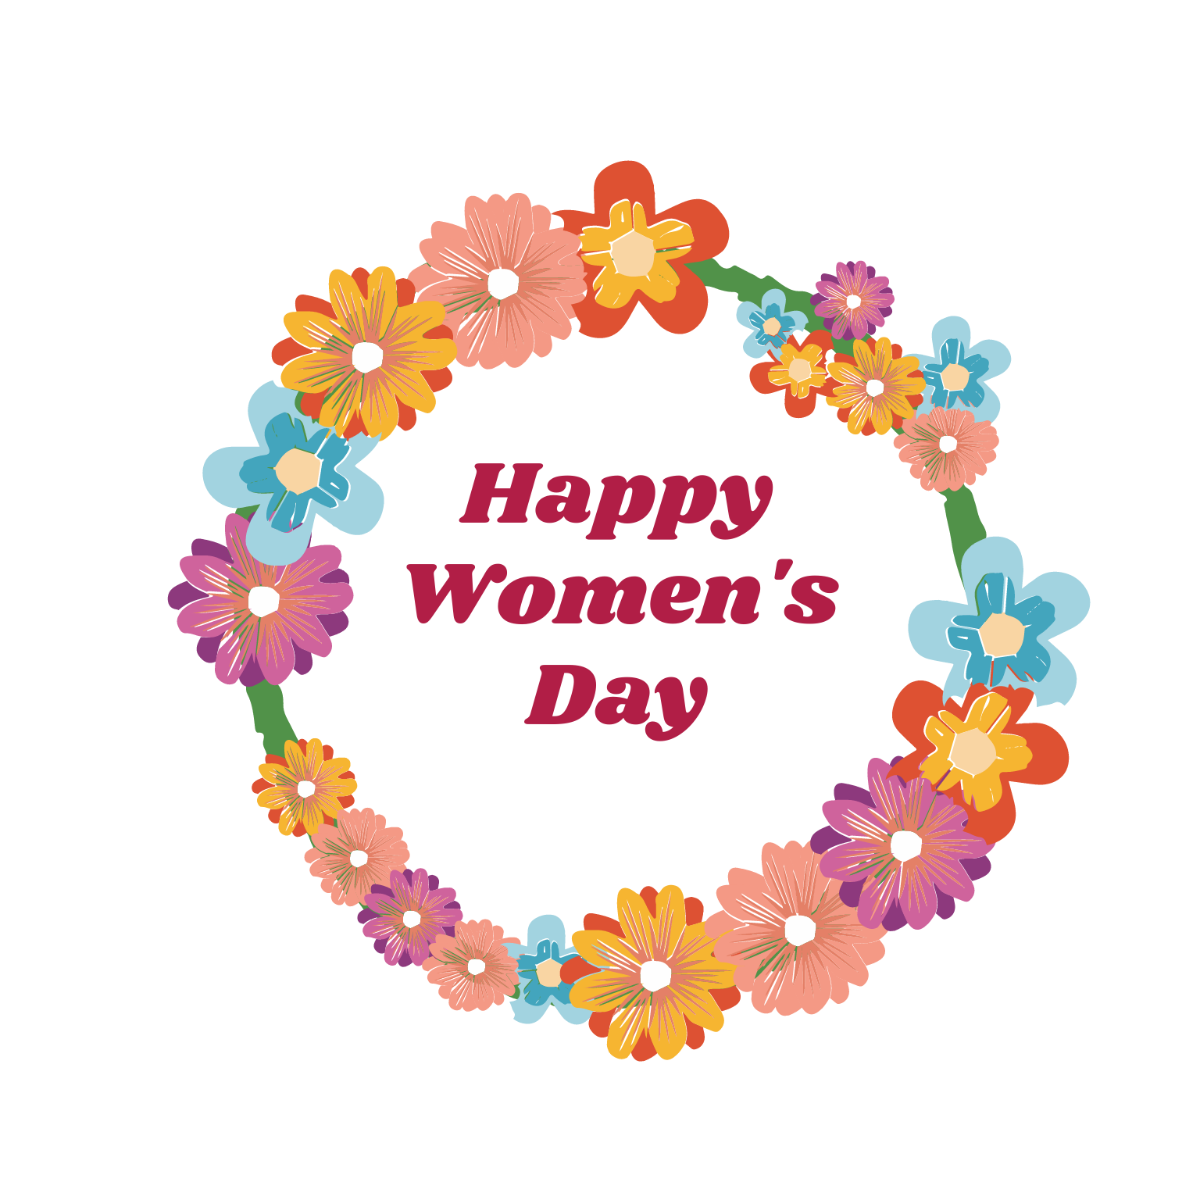 Happy Women's Day Wreath Vector Template